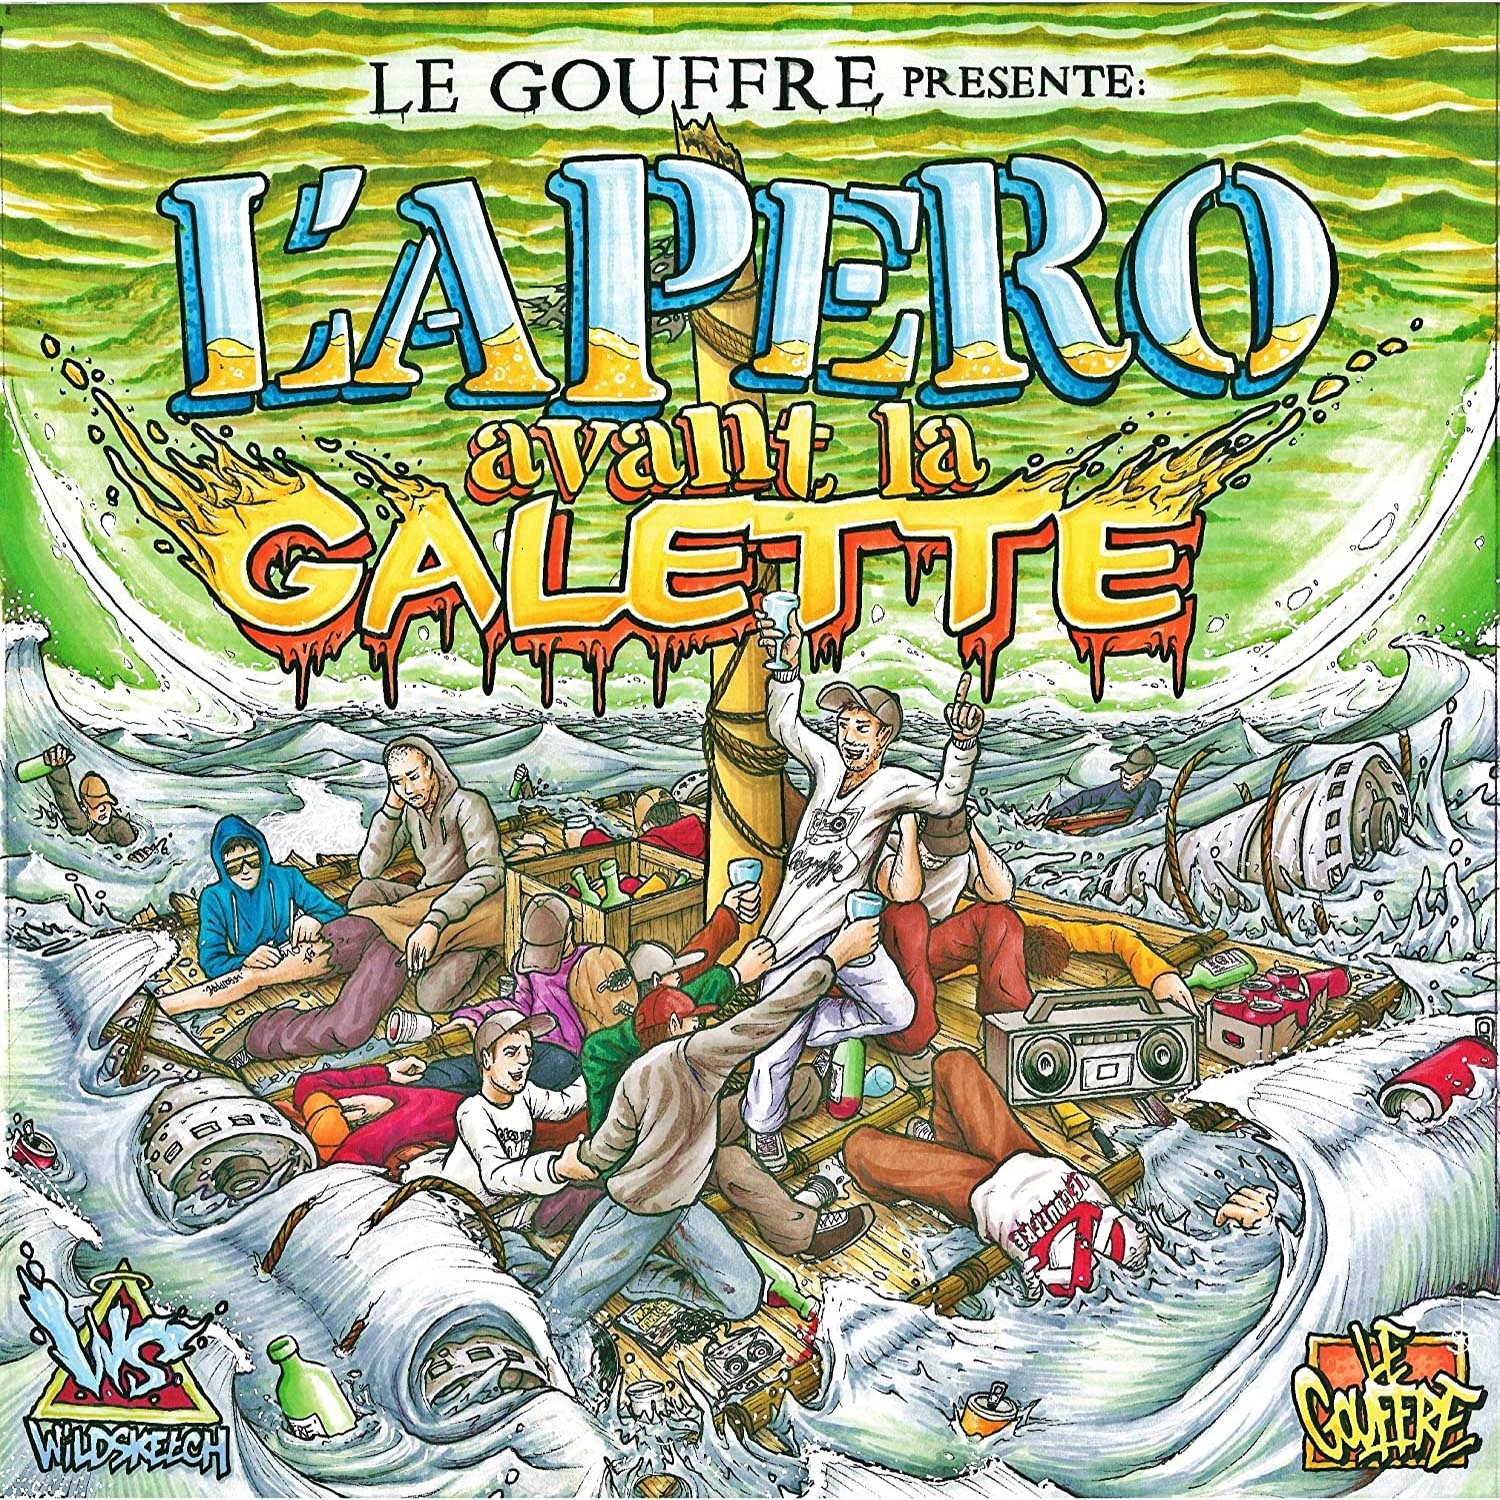 Album Cd "Le Gouffre - L'apéro avant la galette " de le gouffre sur Scredboutique.com